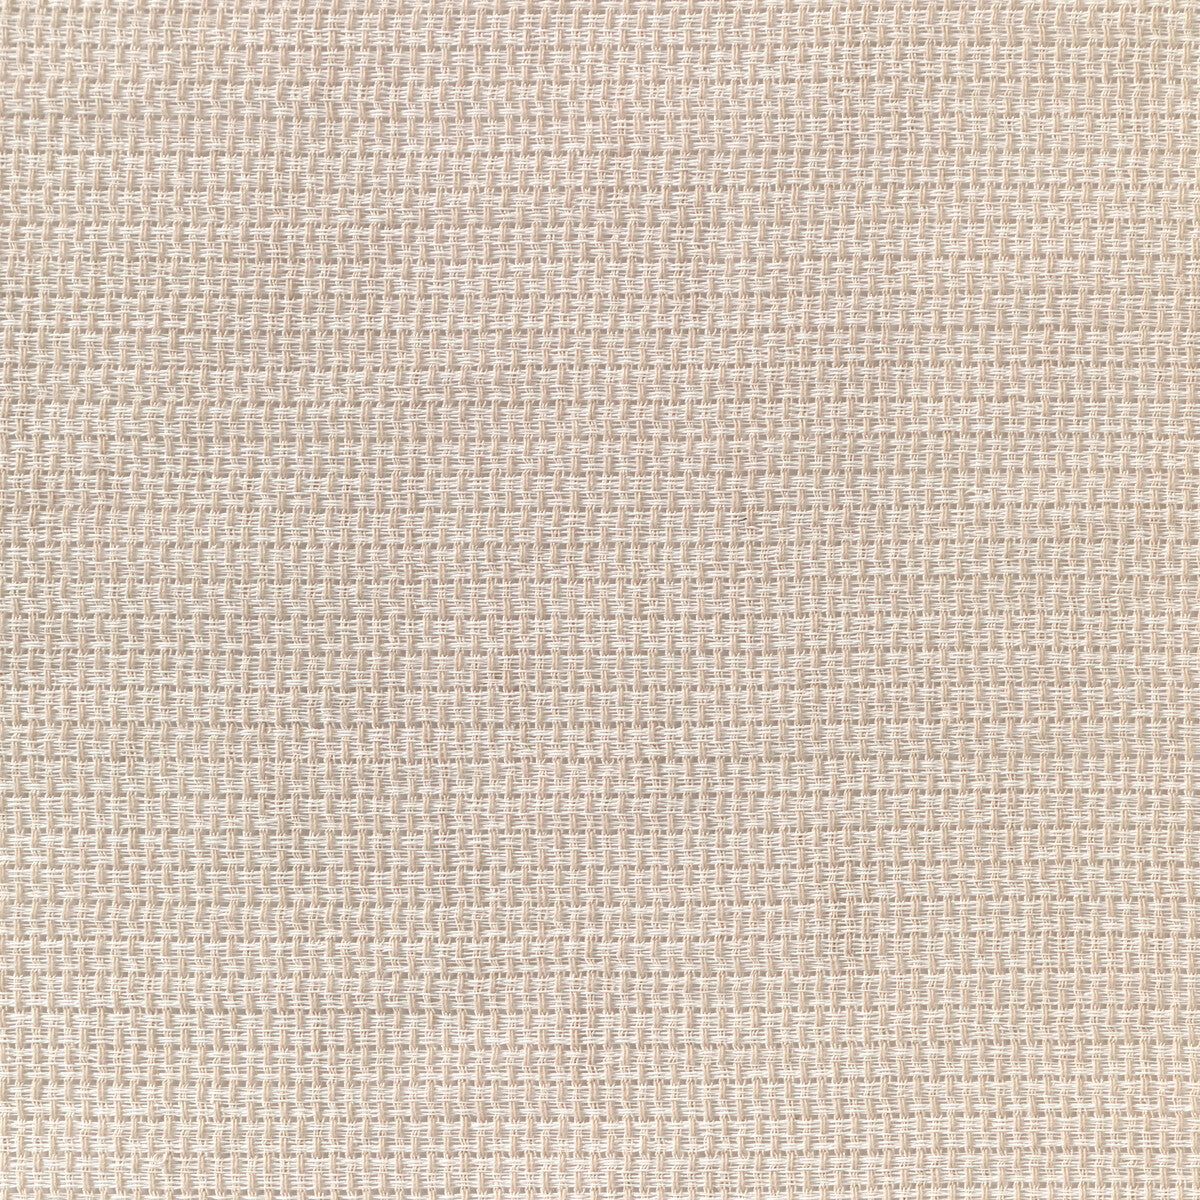 Kravet Basics fabric in 4882-1 color - pattern 4882.1.0 - by Kravet Basics